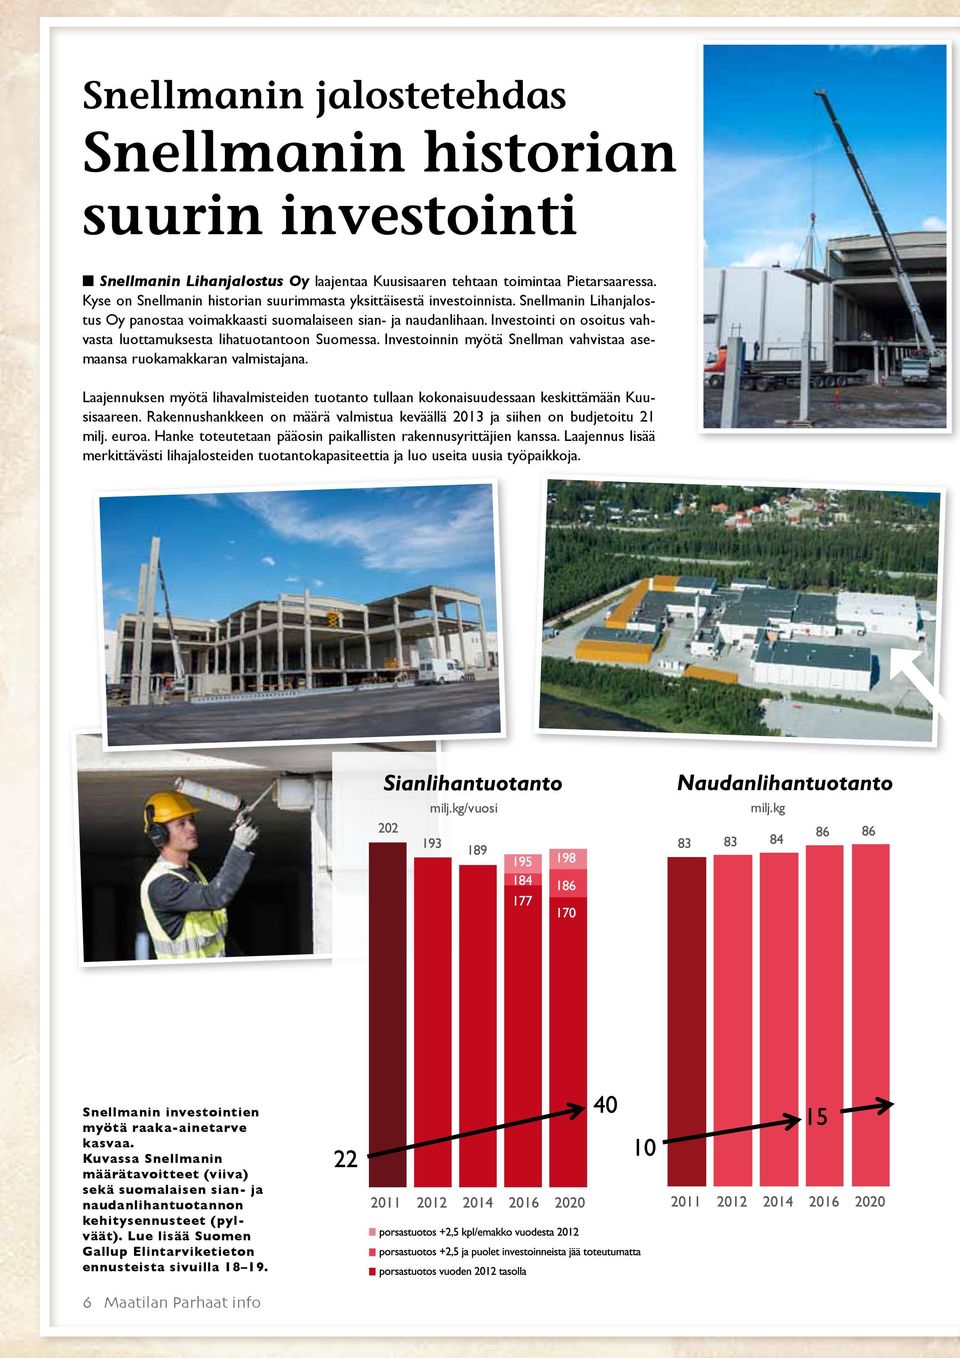 Investointi on osoitus vahvasta luottamuksesta lihatuotantoon Suomessa. Investoinnin myötä Snellman vahvistaa asemaansa ruokamakkaran valmistajana.